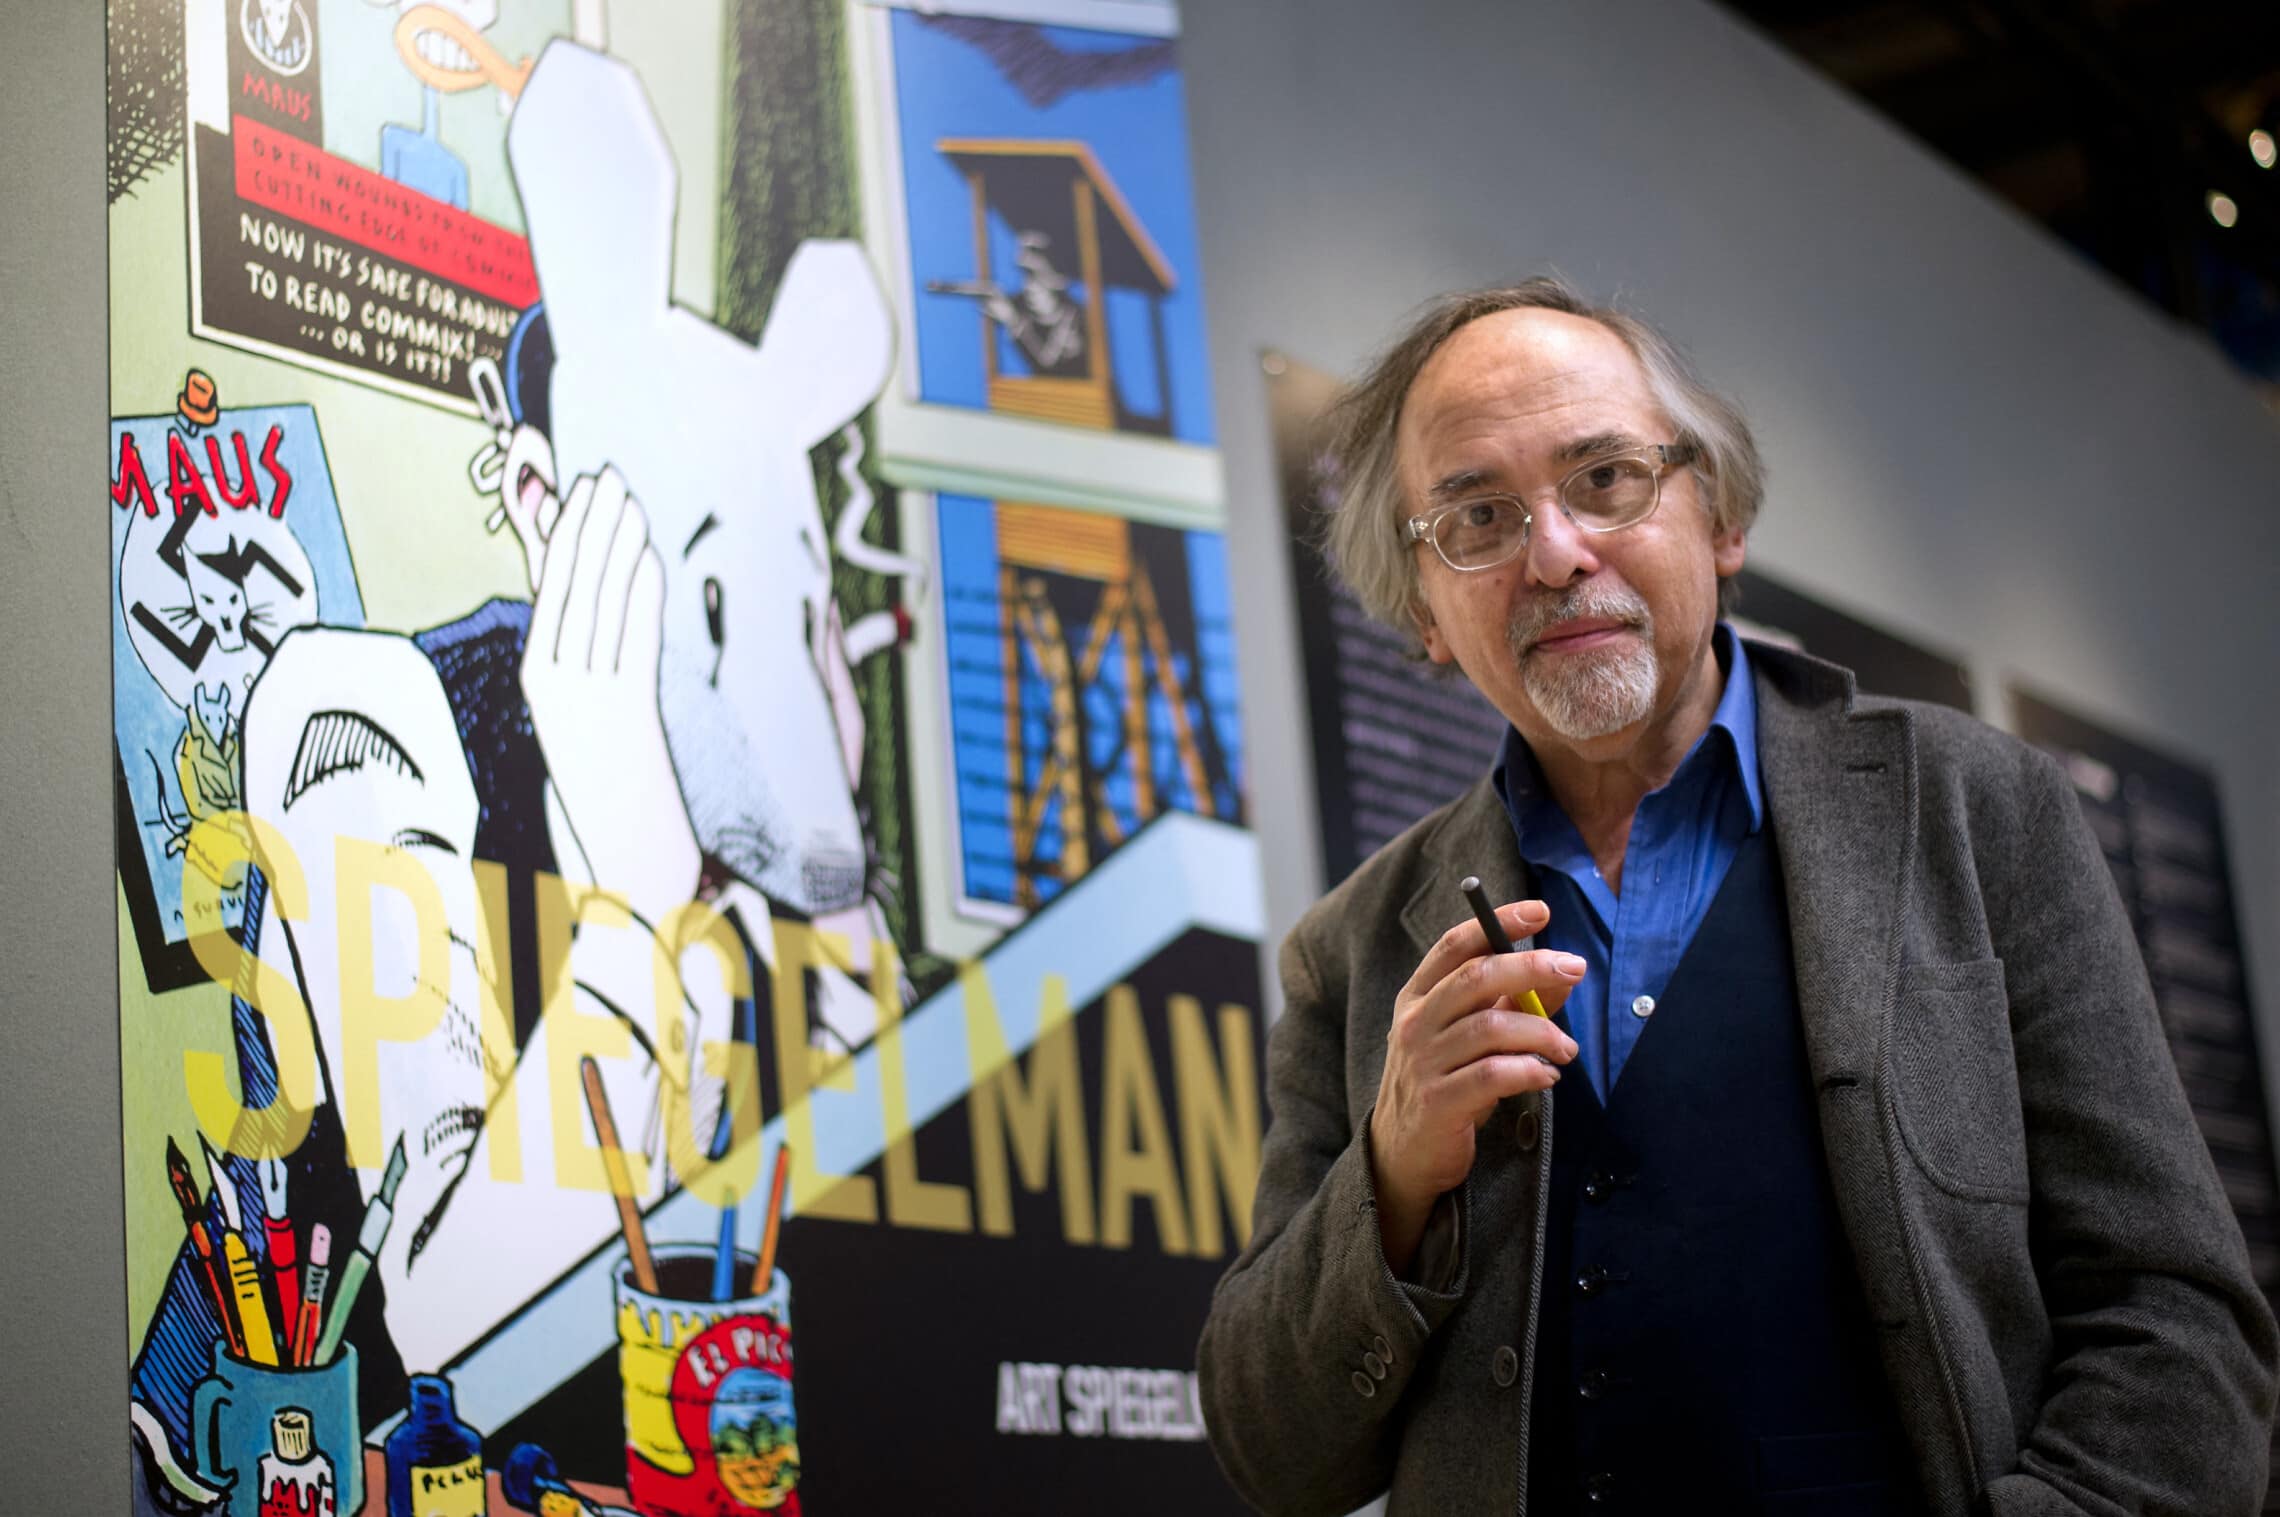 אומן הקומיקס ארט ספיגלמן בתערוכה המציגה את יצירותיו בפריז, 20 במרץ 2012 (צילום: BERTRAND LANGLOIS / AFP)